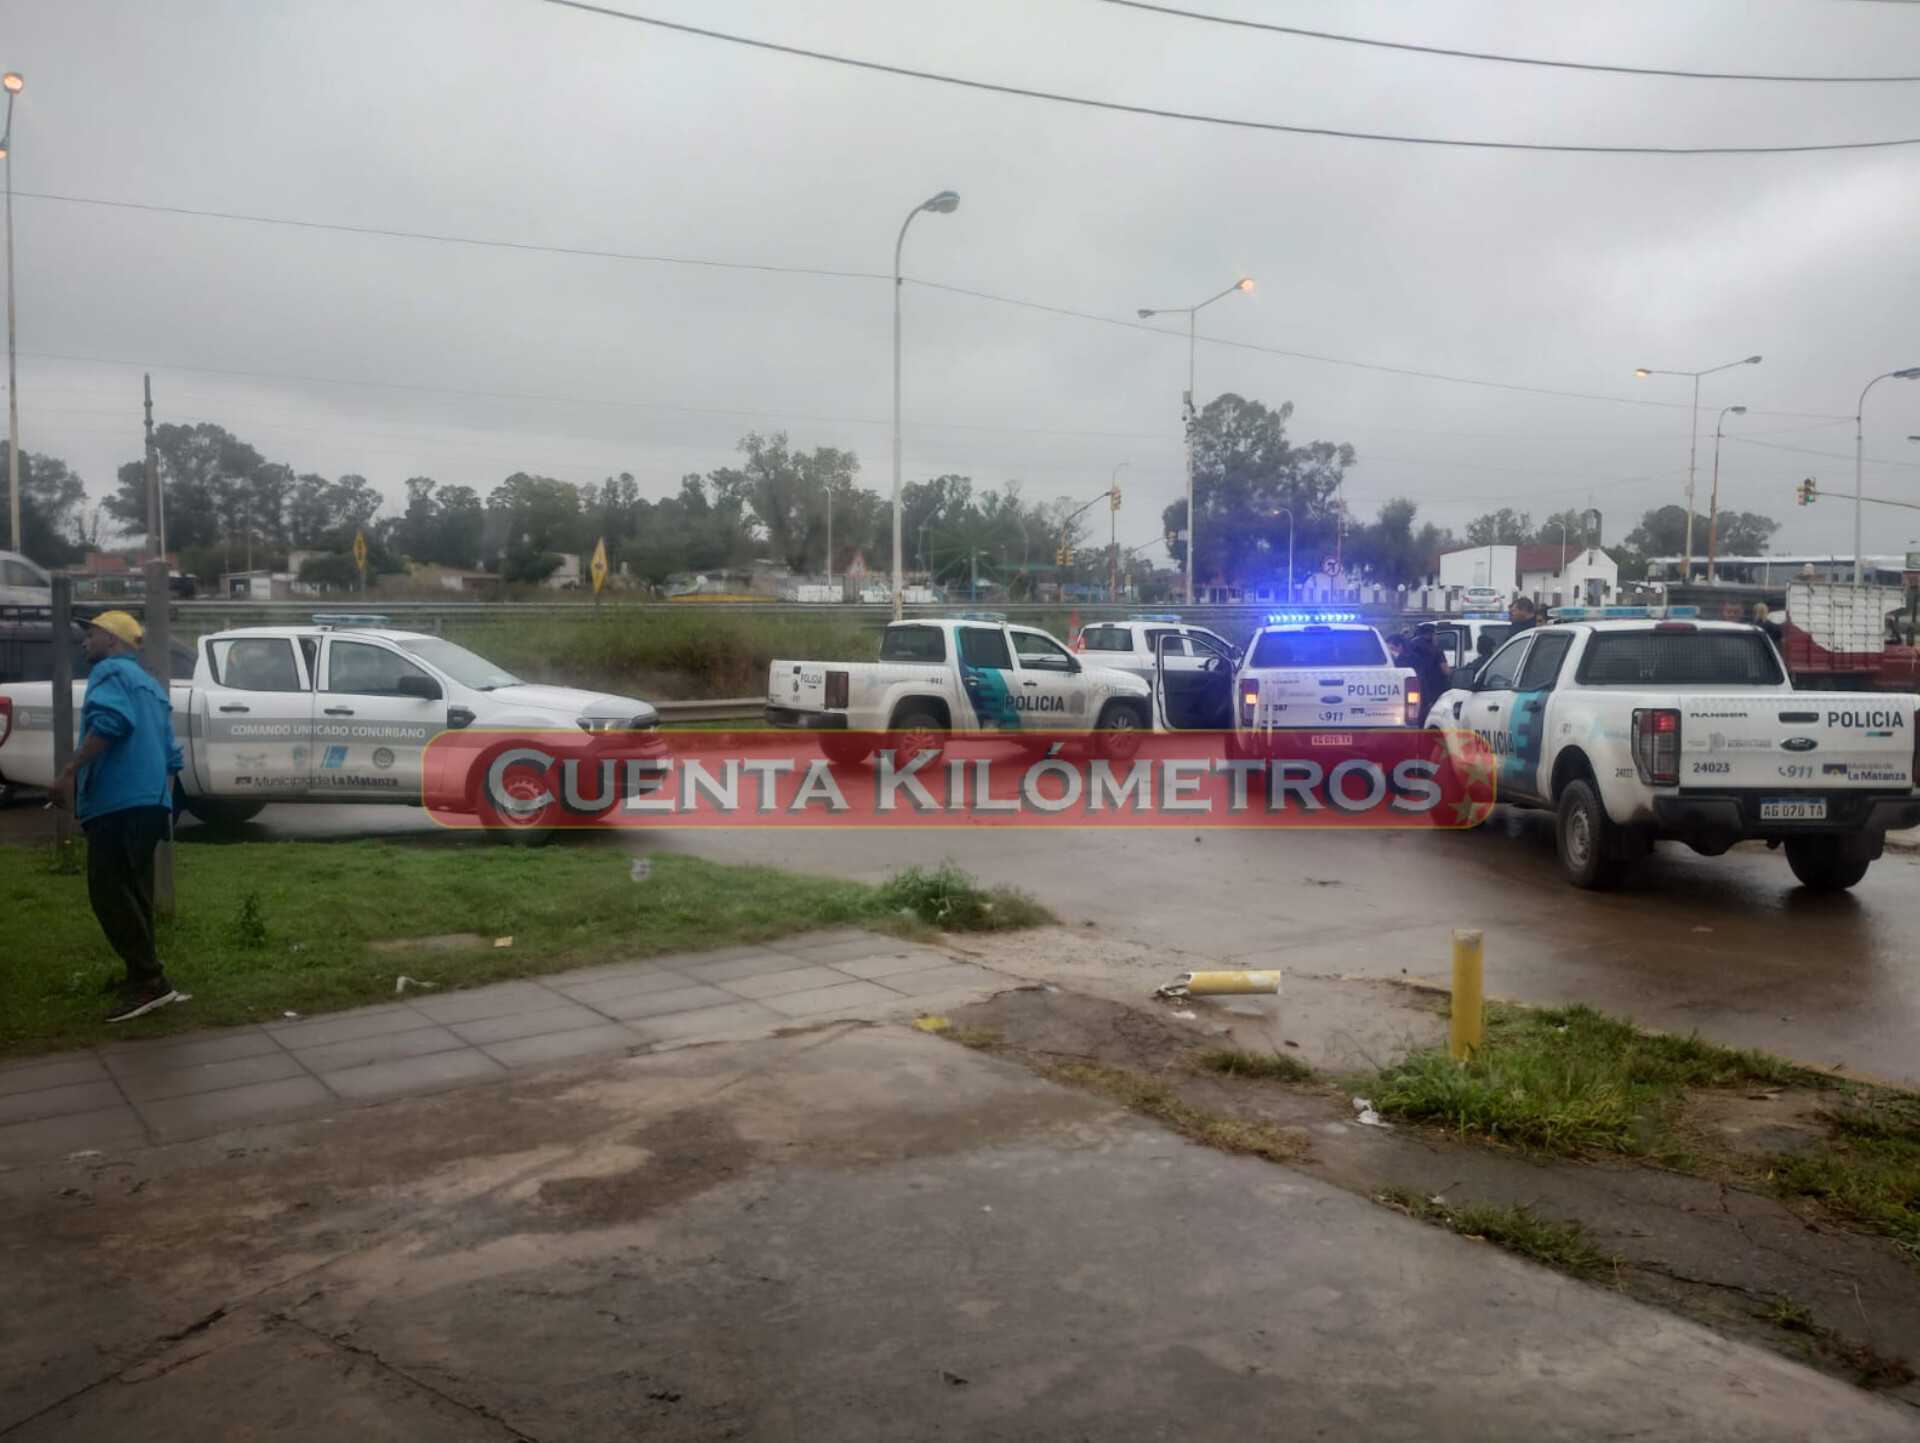 PERSECUCIÓN POLICIAL DE AUTO ROBADO EN EL KILÓMETRO 30 HASTA EL 45,500 CON EL SALDO DE UN DETENIDO